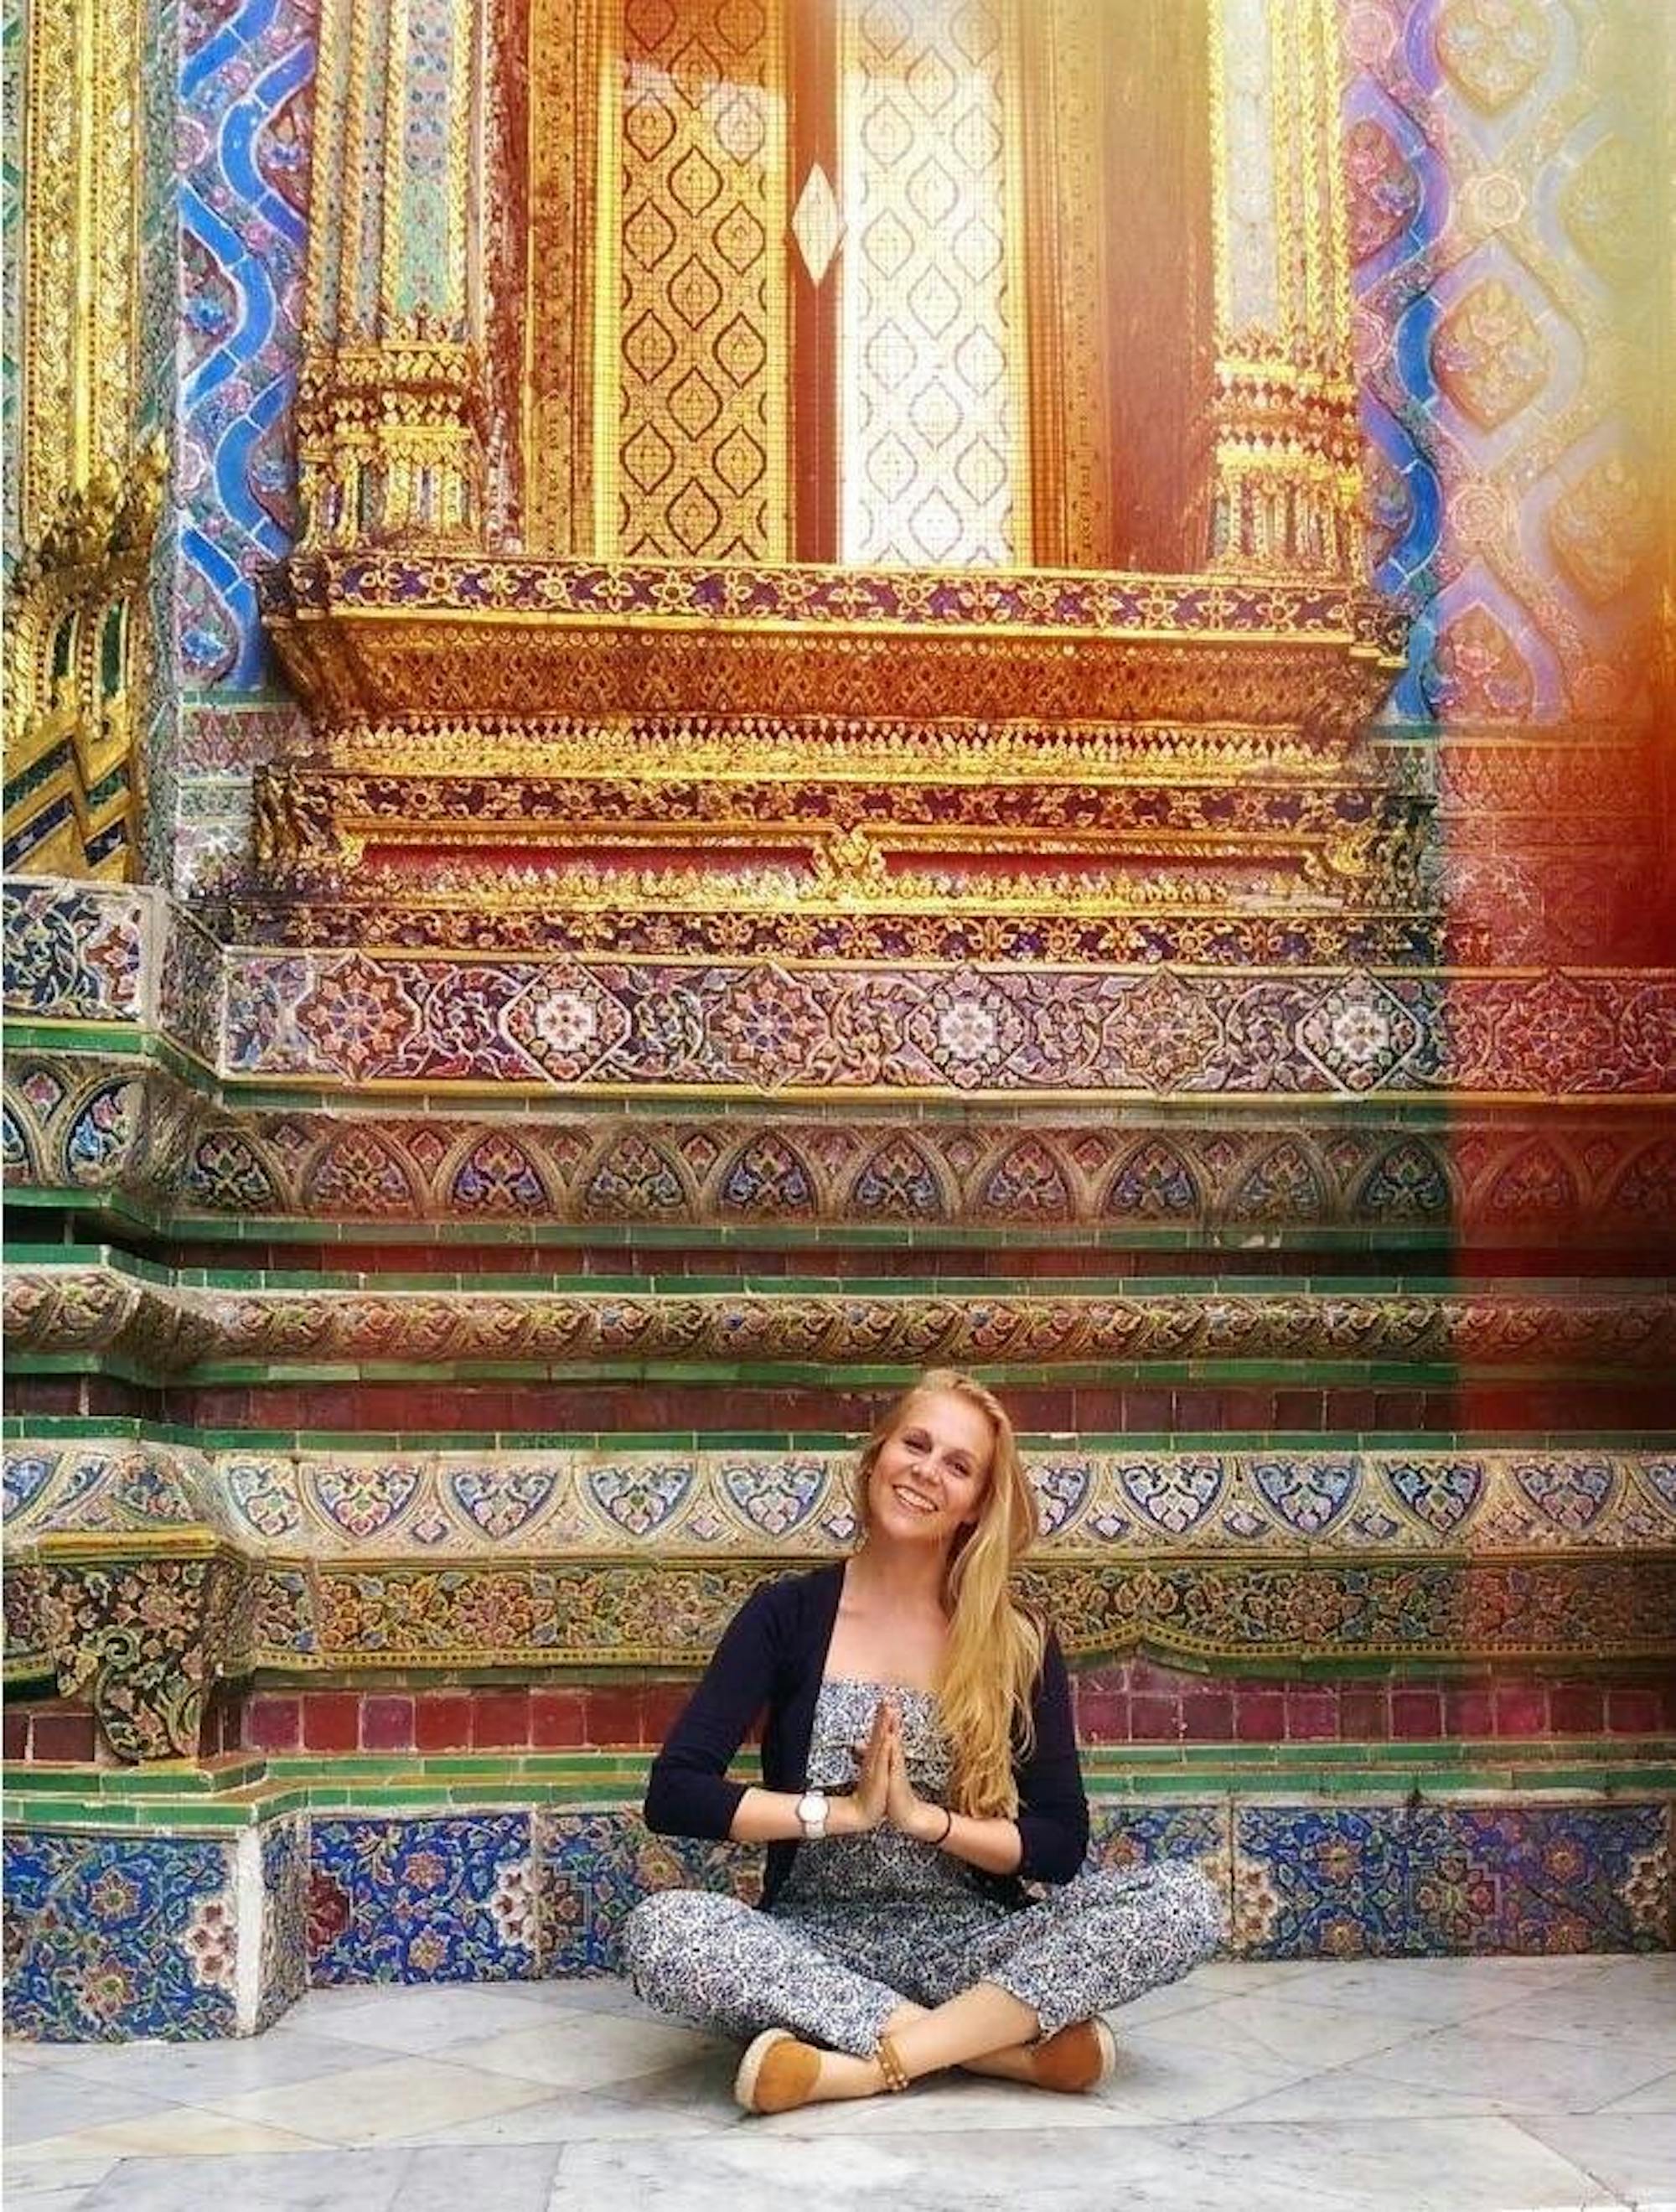 Eine junge Frau (Meike) sitzt im Schneidersitz in meditierender Position in einem Tempel. Hinter ihr sind farbenfrohe Malereien zu sehen. 